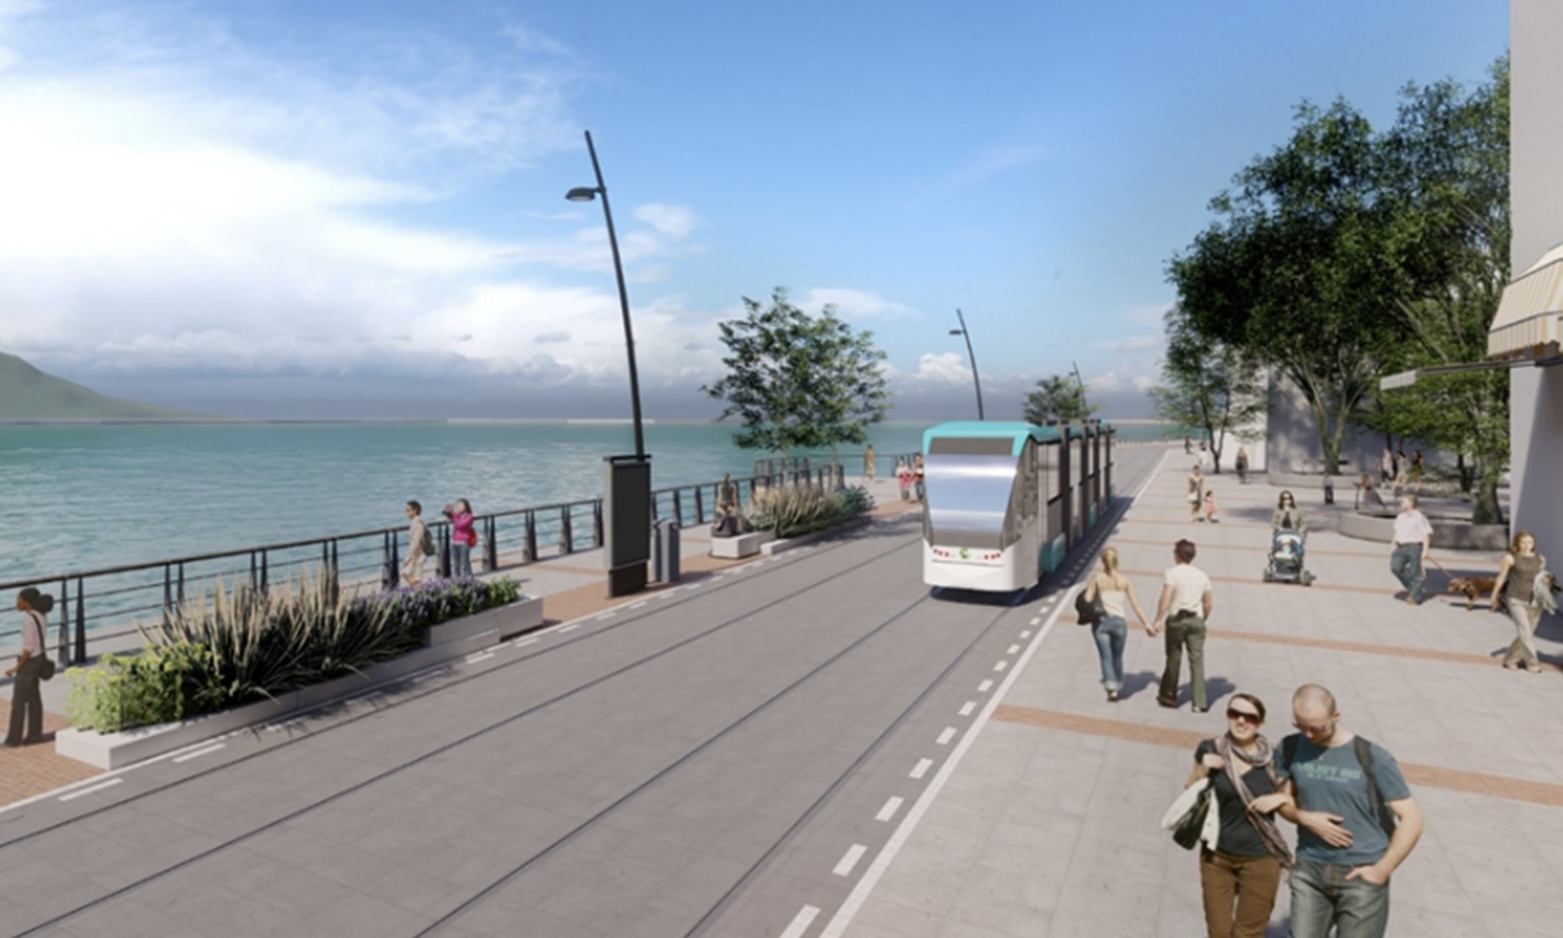  淡海輕軌第二期改行計畫 連接新舊市區路網 